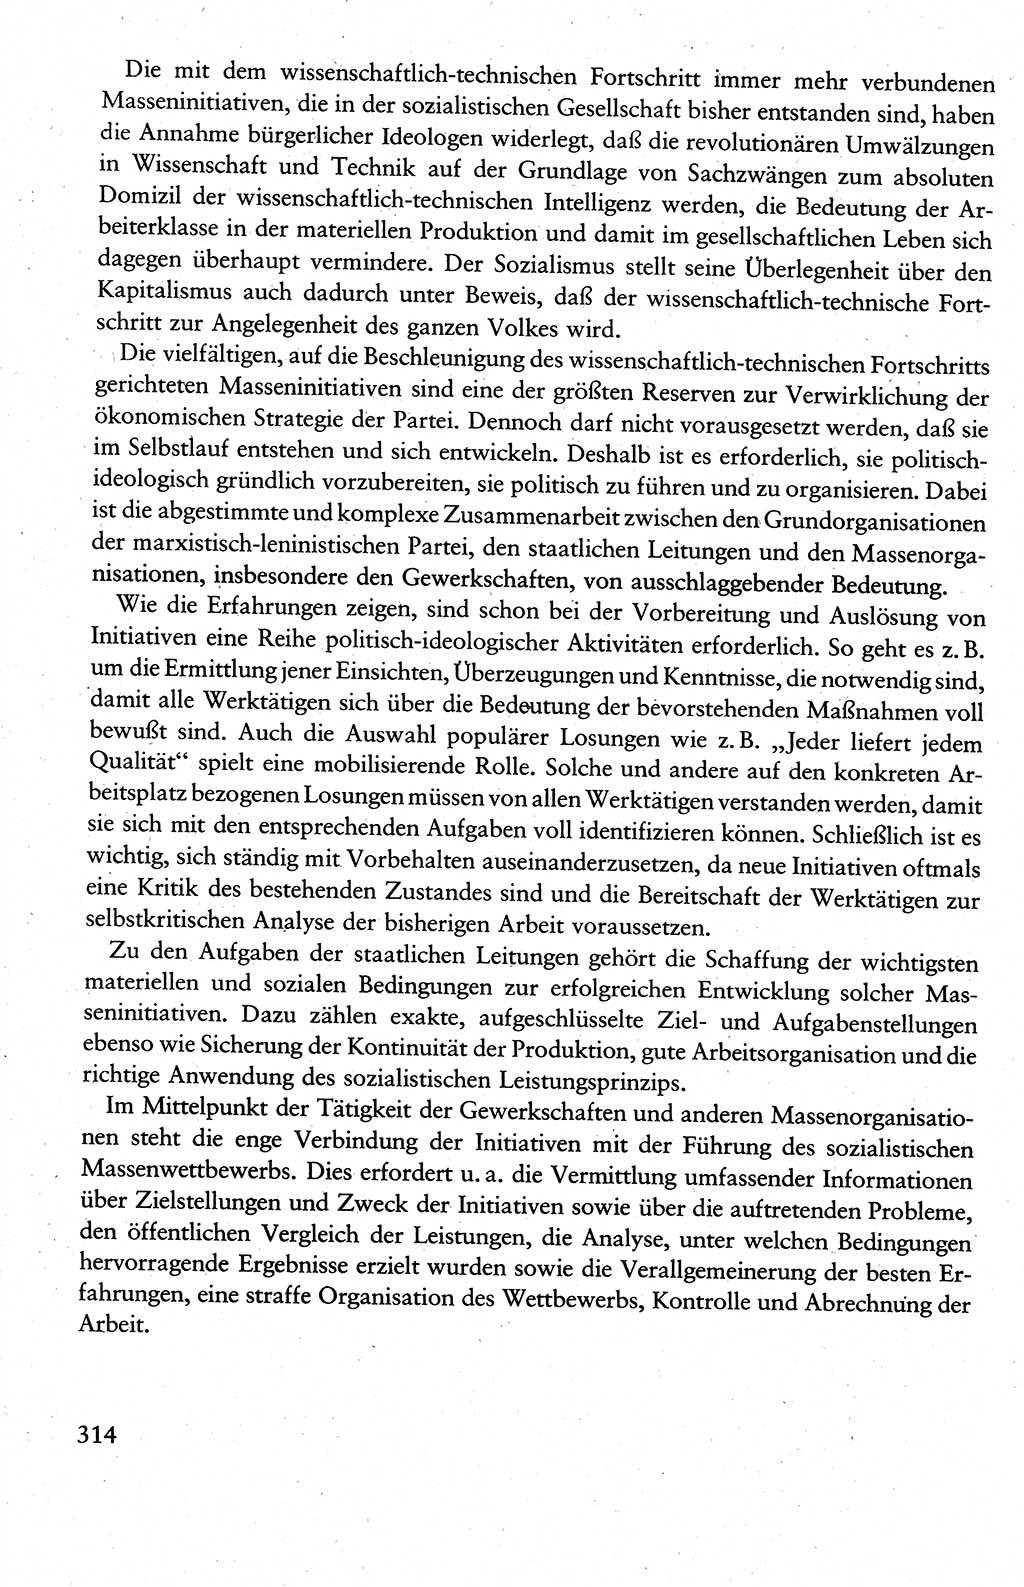 Wissenschaftlicher Kommunismus [Deutsche Demokratische Republik (DDR)], Lehrbuch für das marxistisch-leninistische Grundlagenstudium 1983, Seite 314 (Wiss. Komm. DDR Lb. 1983, S. 314)